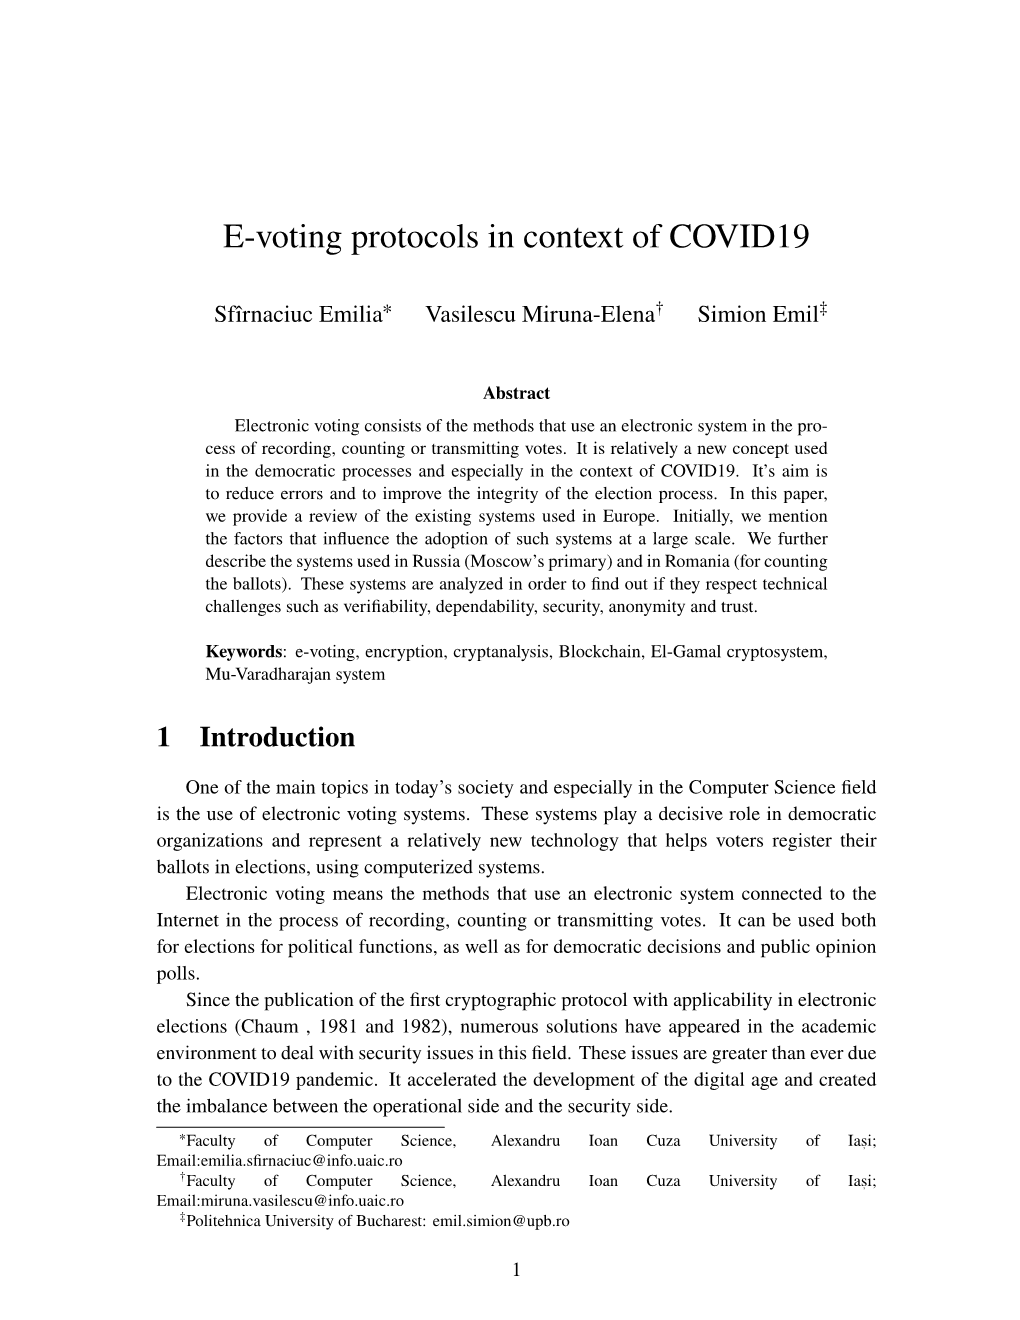 E-Voting Protocols in Context of COVID19